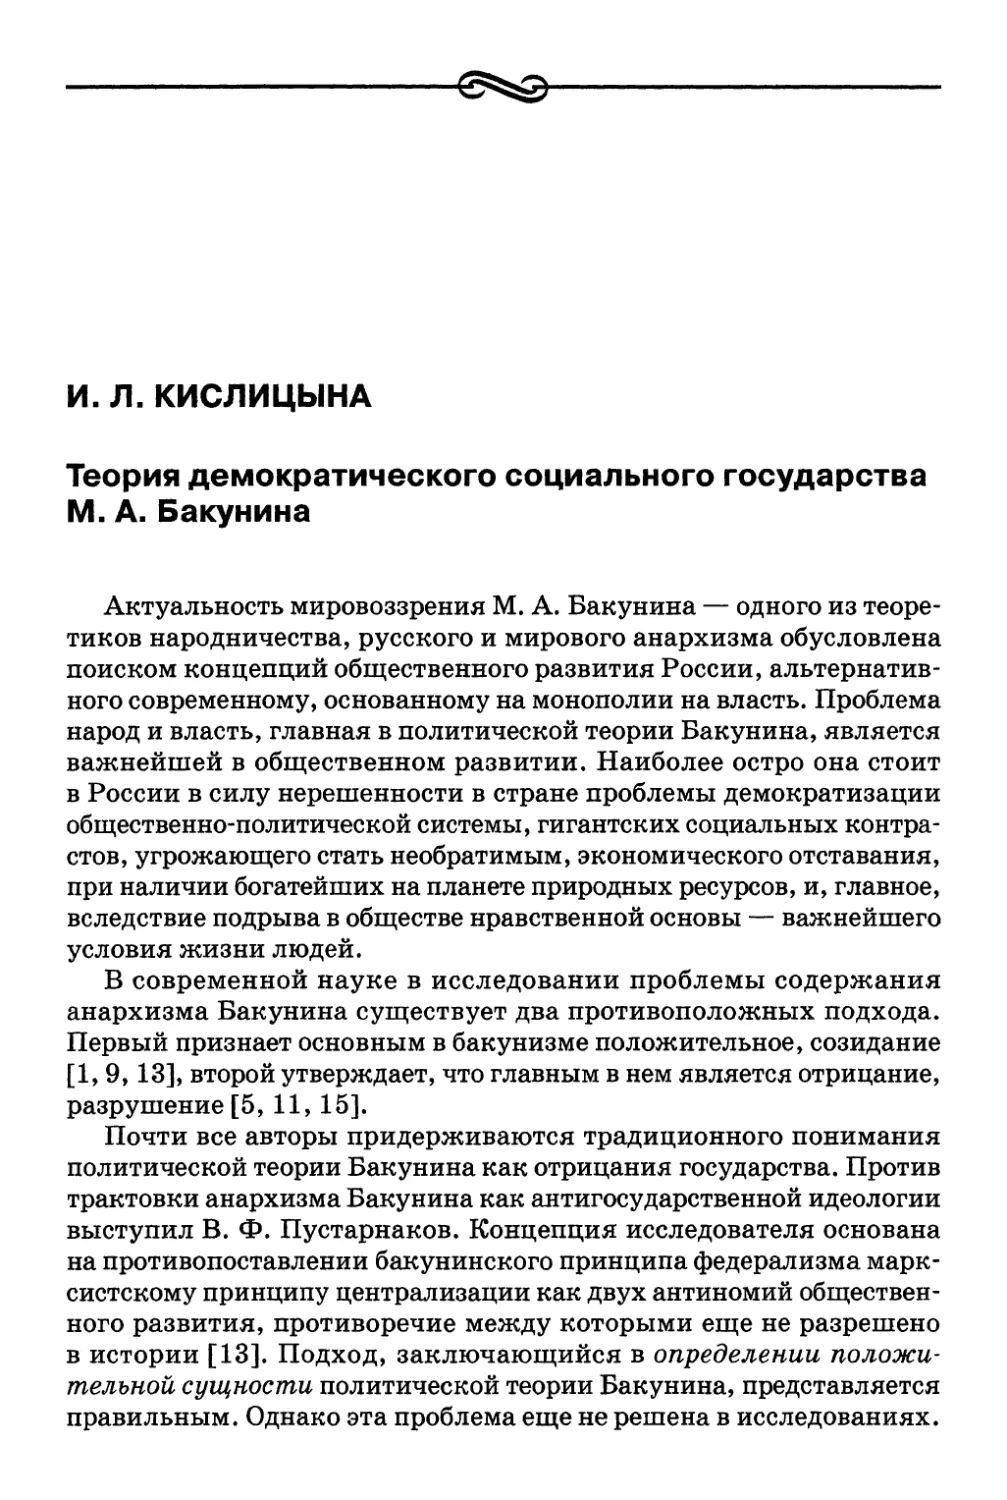 И. Л. Кислицына. Теория демократического социального государства М. А. Бакунина